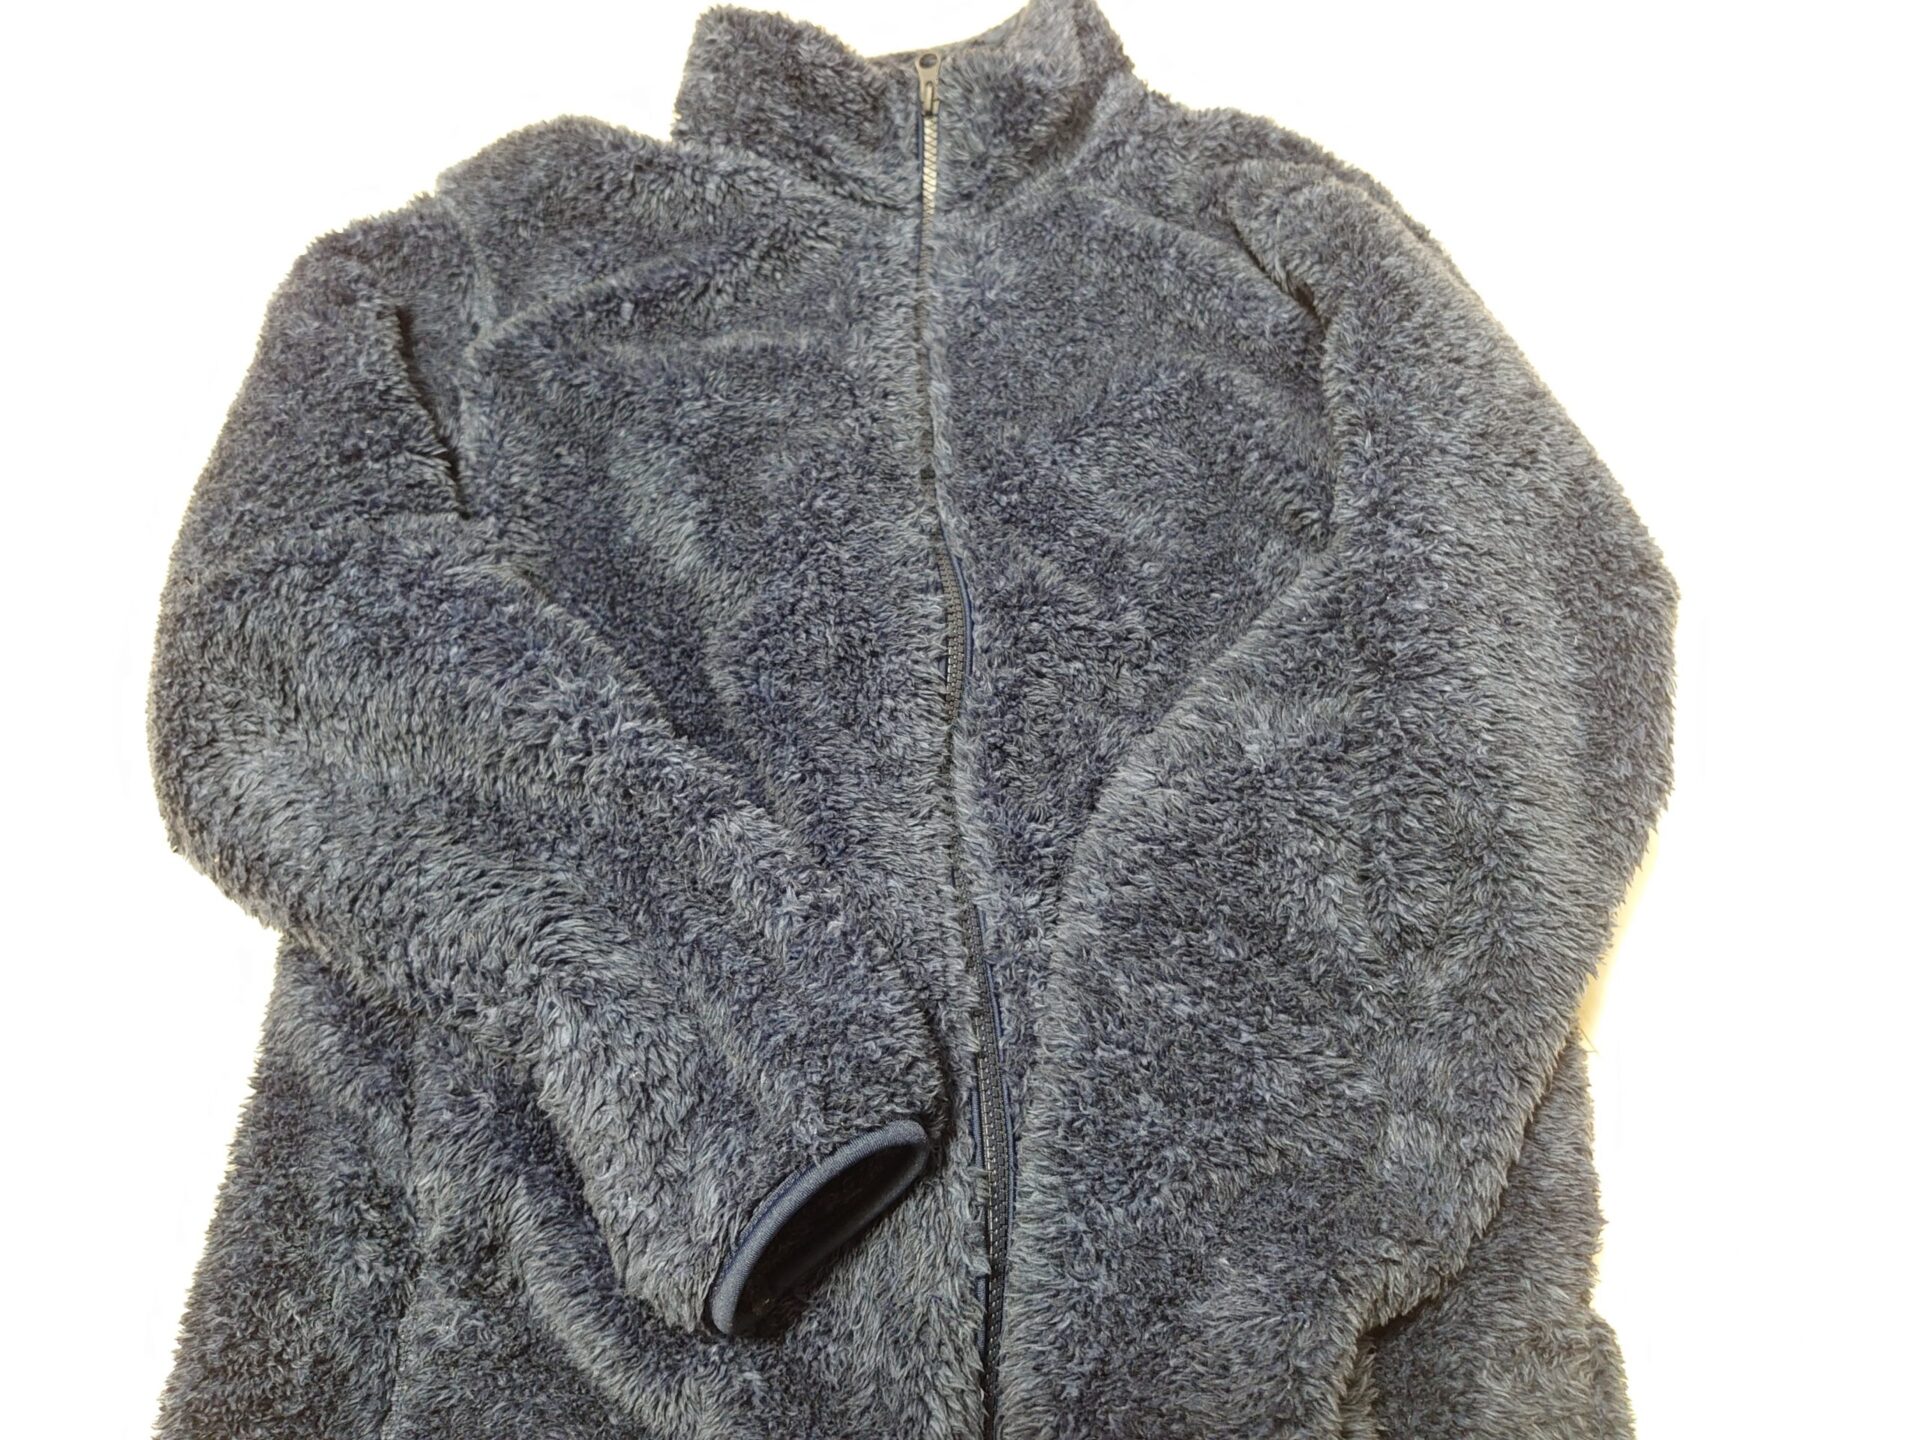 ユニクロ ファーリーフリースフルジップジャケットが暖かく部屋着に最適 | SEの徒然旅ブログ